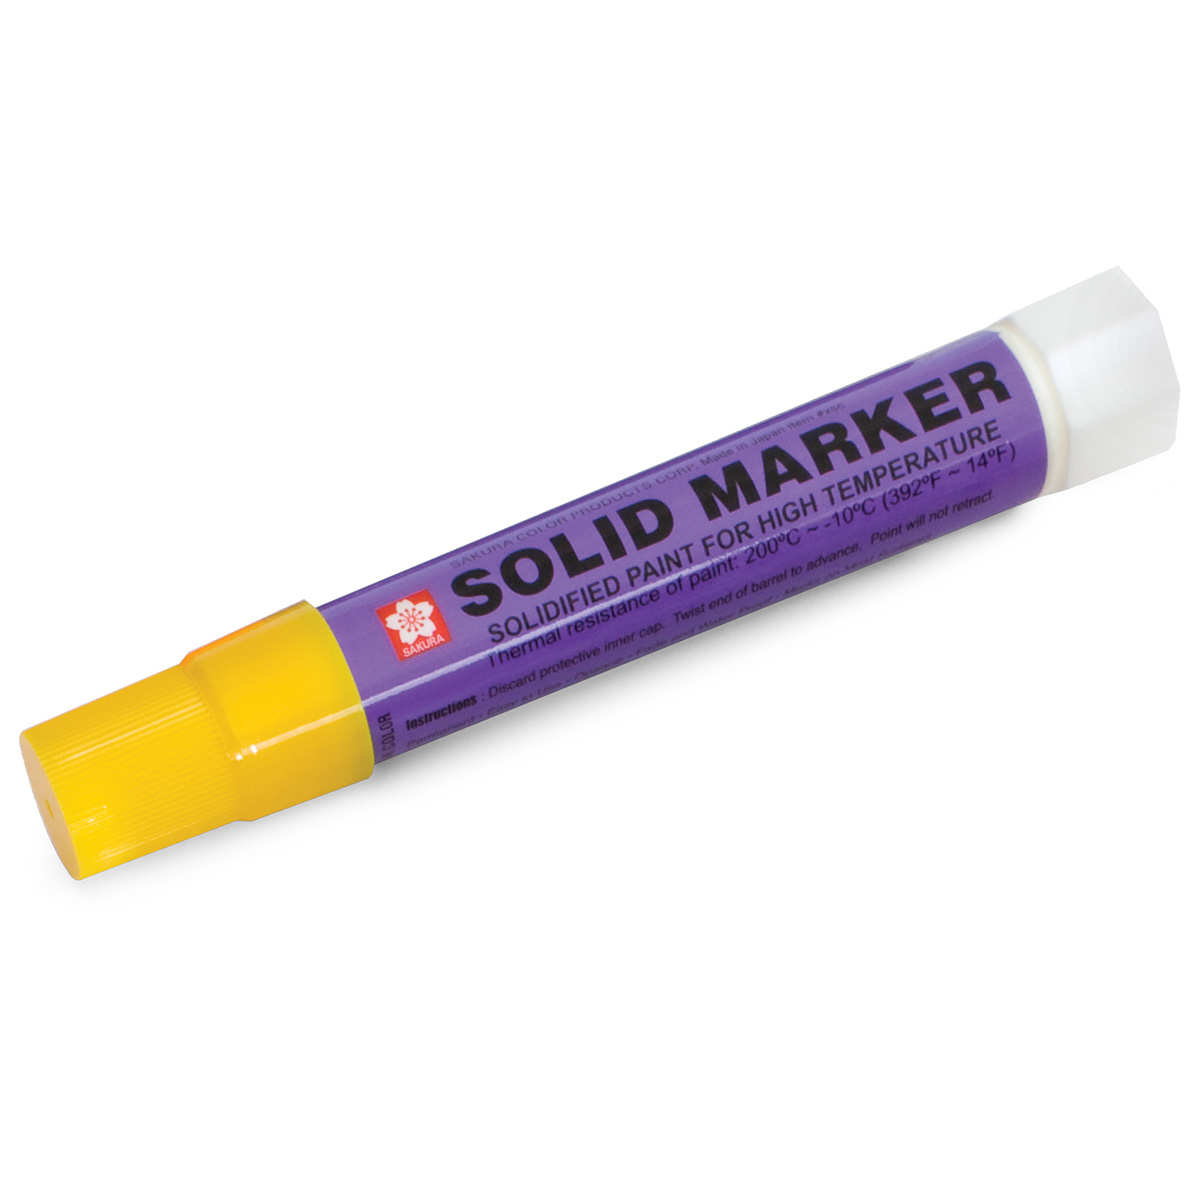 Sakura Solid Yellow Paint Marker